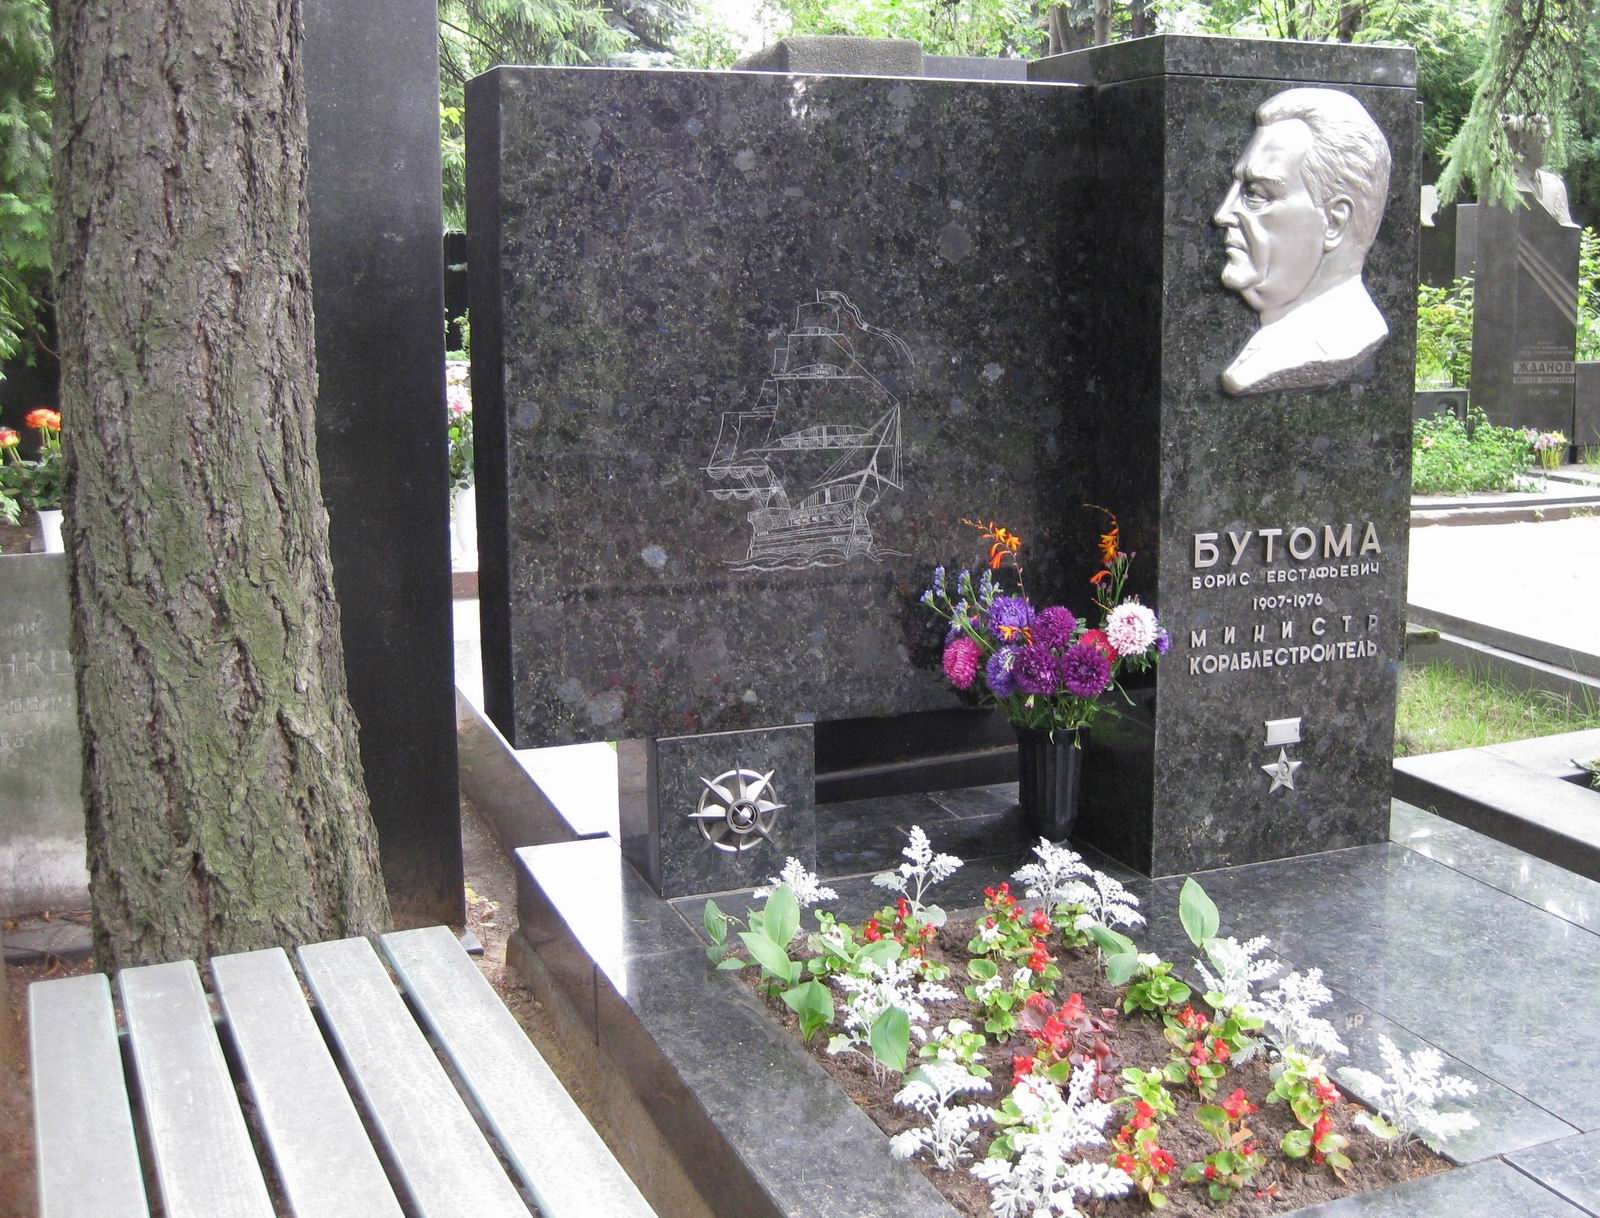 Памятник на могиле Бутомы Б.Е. (1907–1976), ск. П.Шапиро, арх. С.Григорьев, на Новодевичьем кладбище (6–28–4).